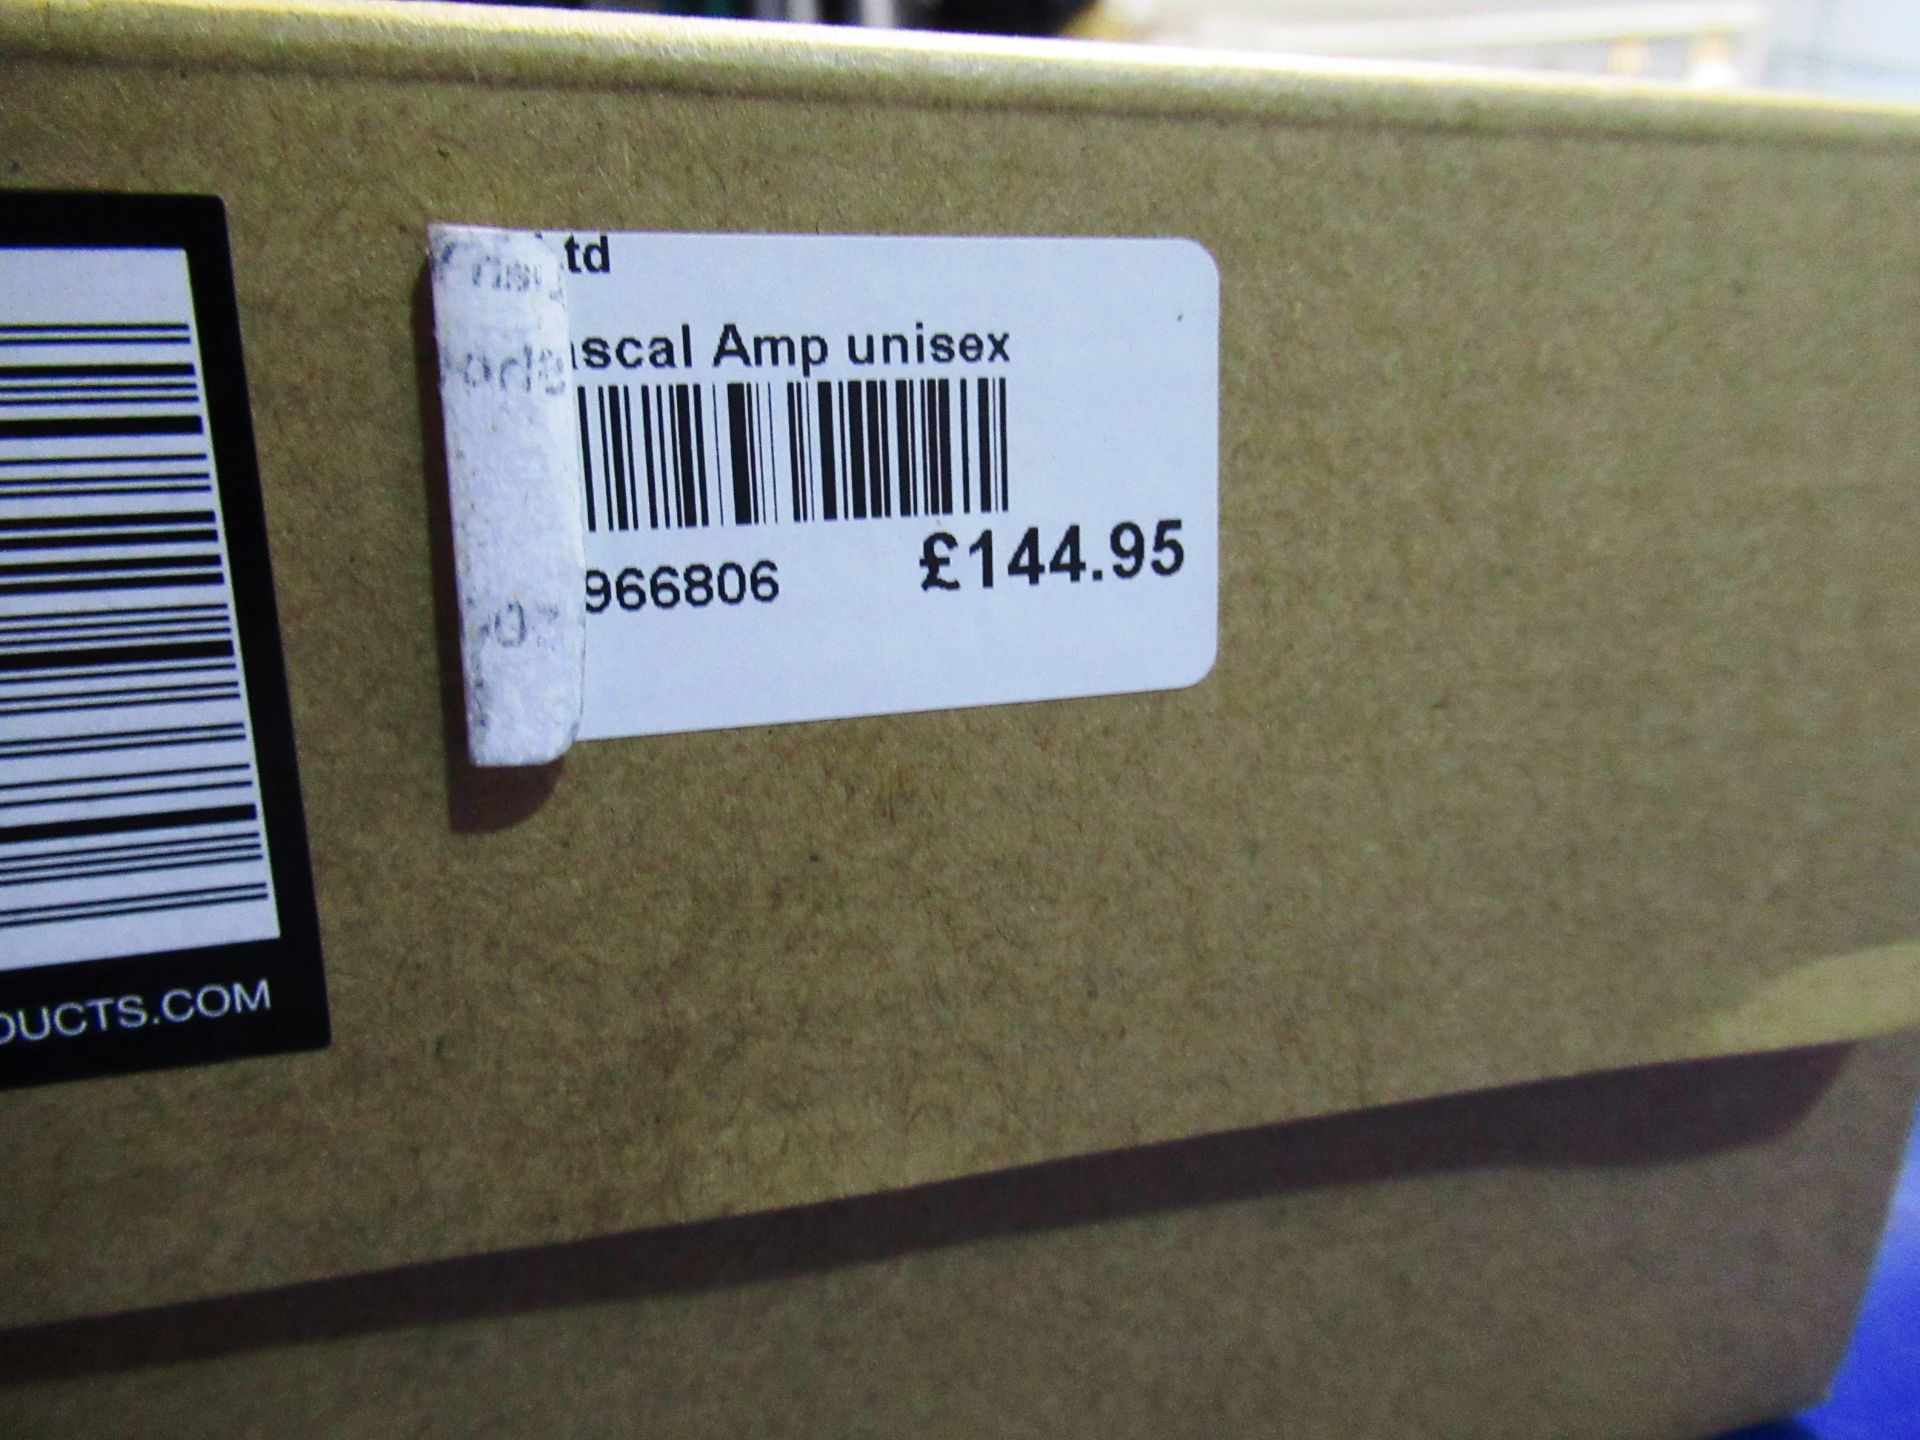 Ion Rascle AMP unisex shoes, size 43 (UK size 9.5) (White) - Image 4 of 4